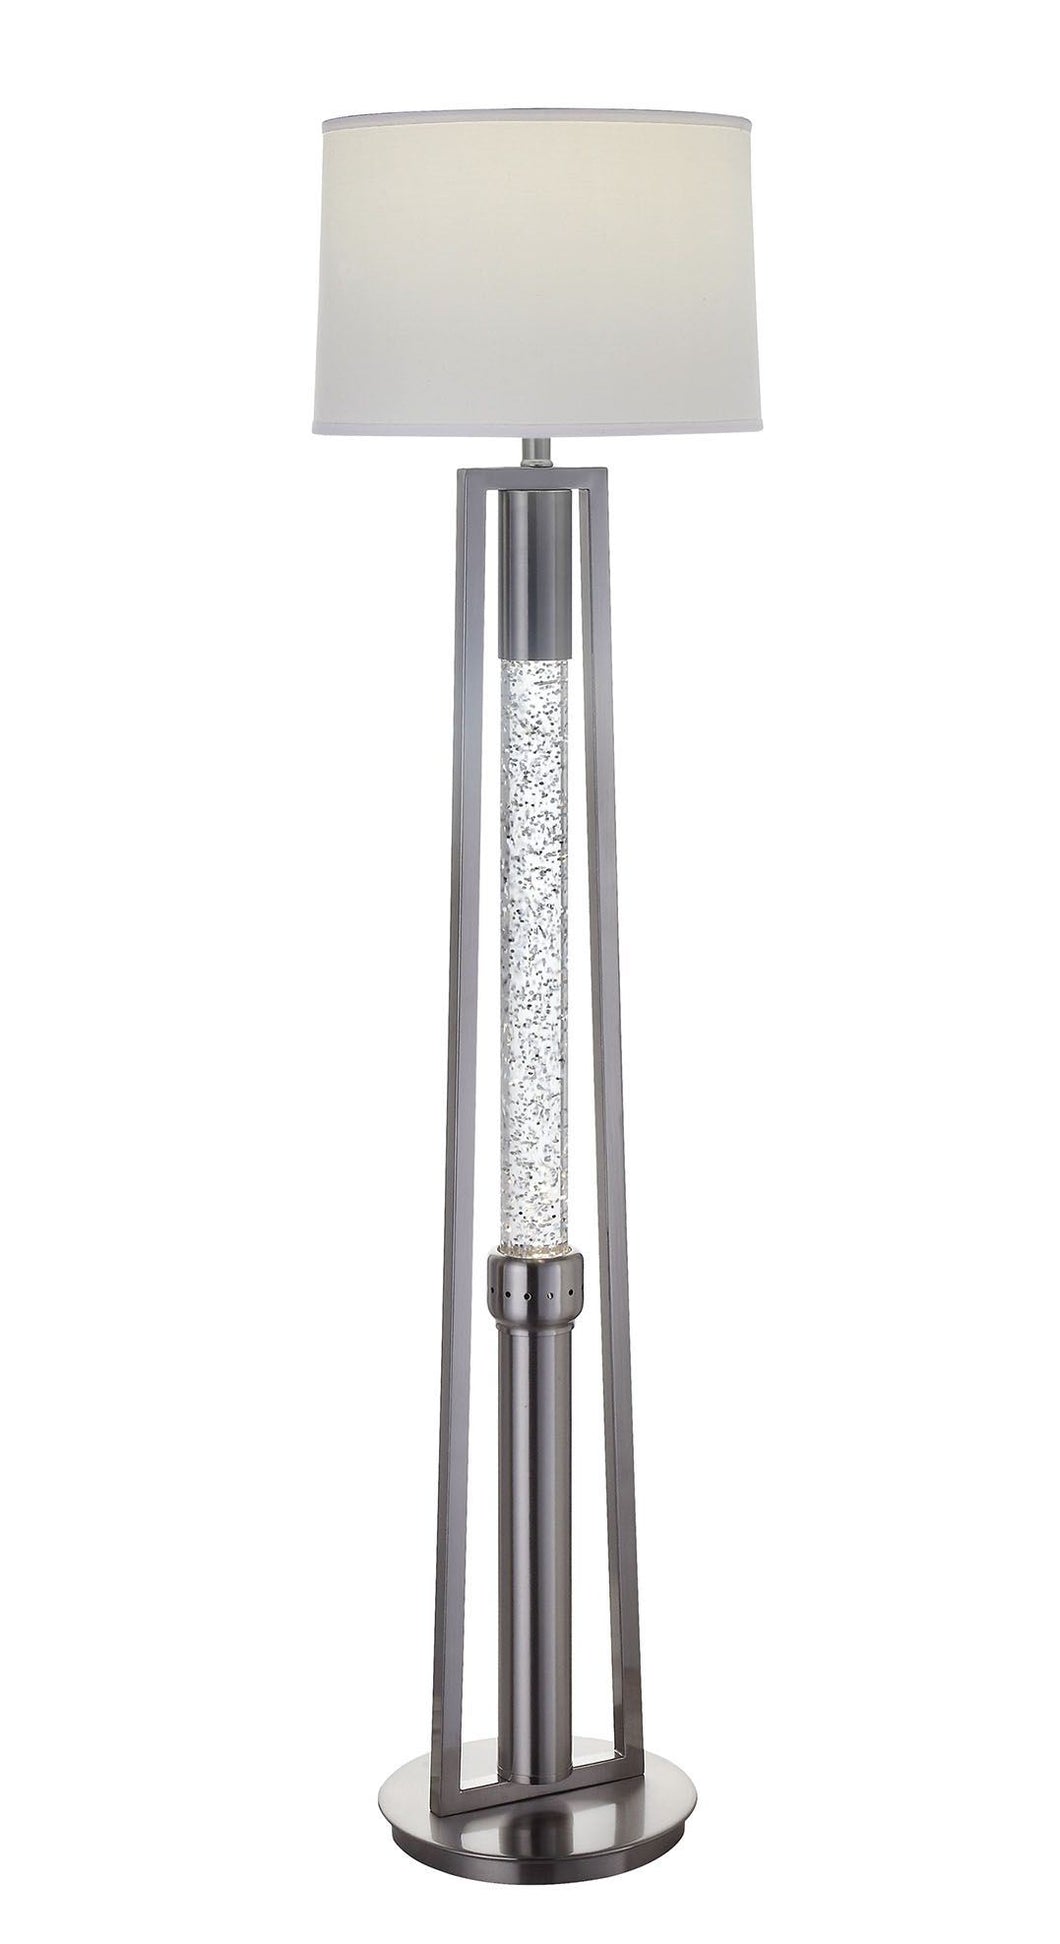 Ovesen - Floor Lamp - Brushed Nickel